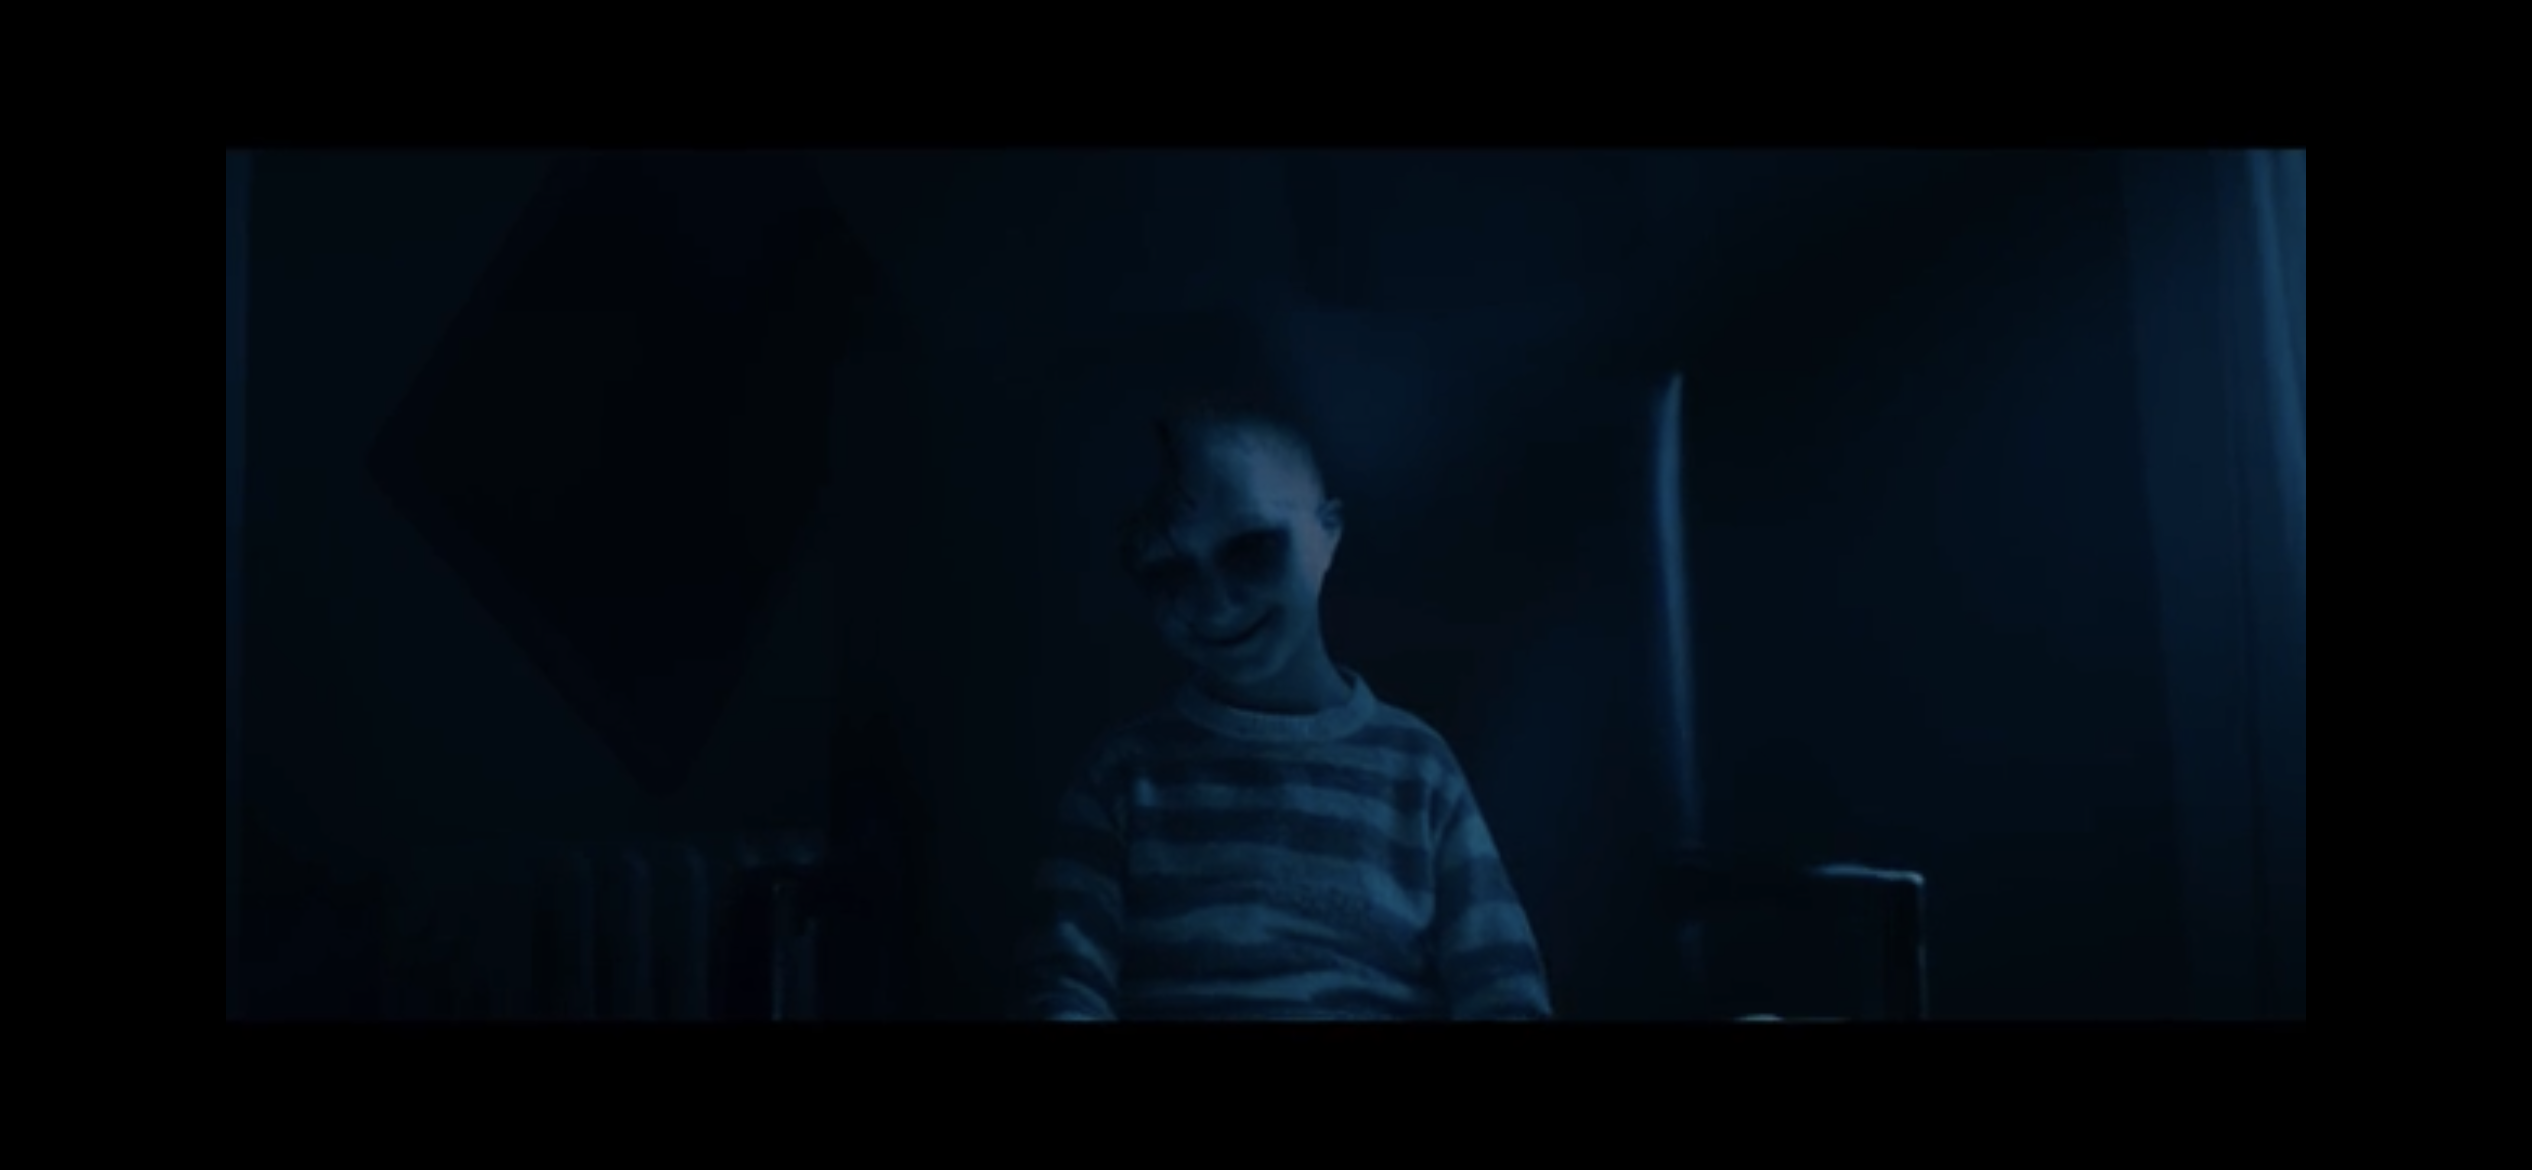 A creepy child in the dark